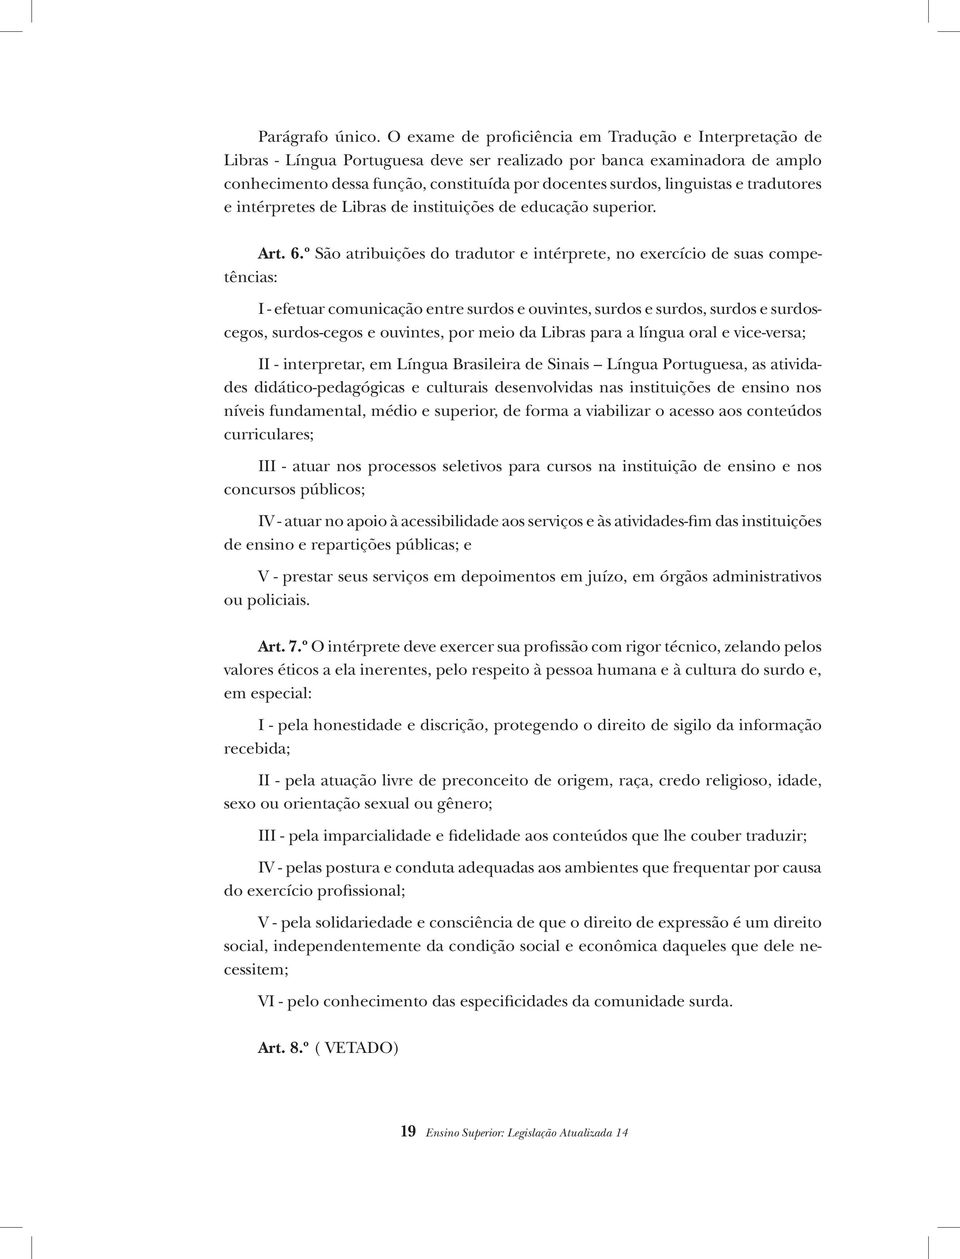 linguistas e tradutores e intérpretes de Libras de instituições de educação superior. Art. 6.